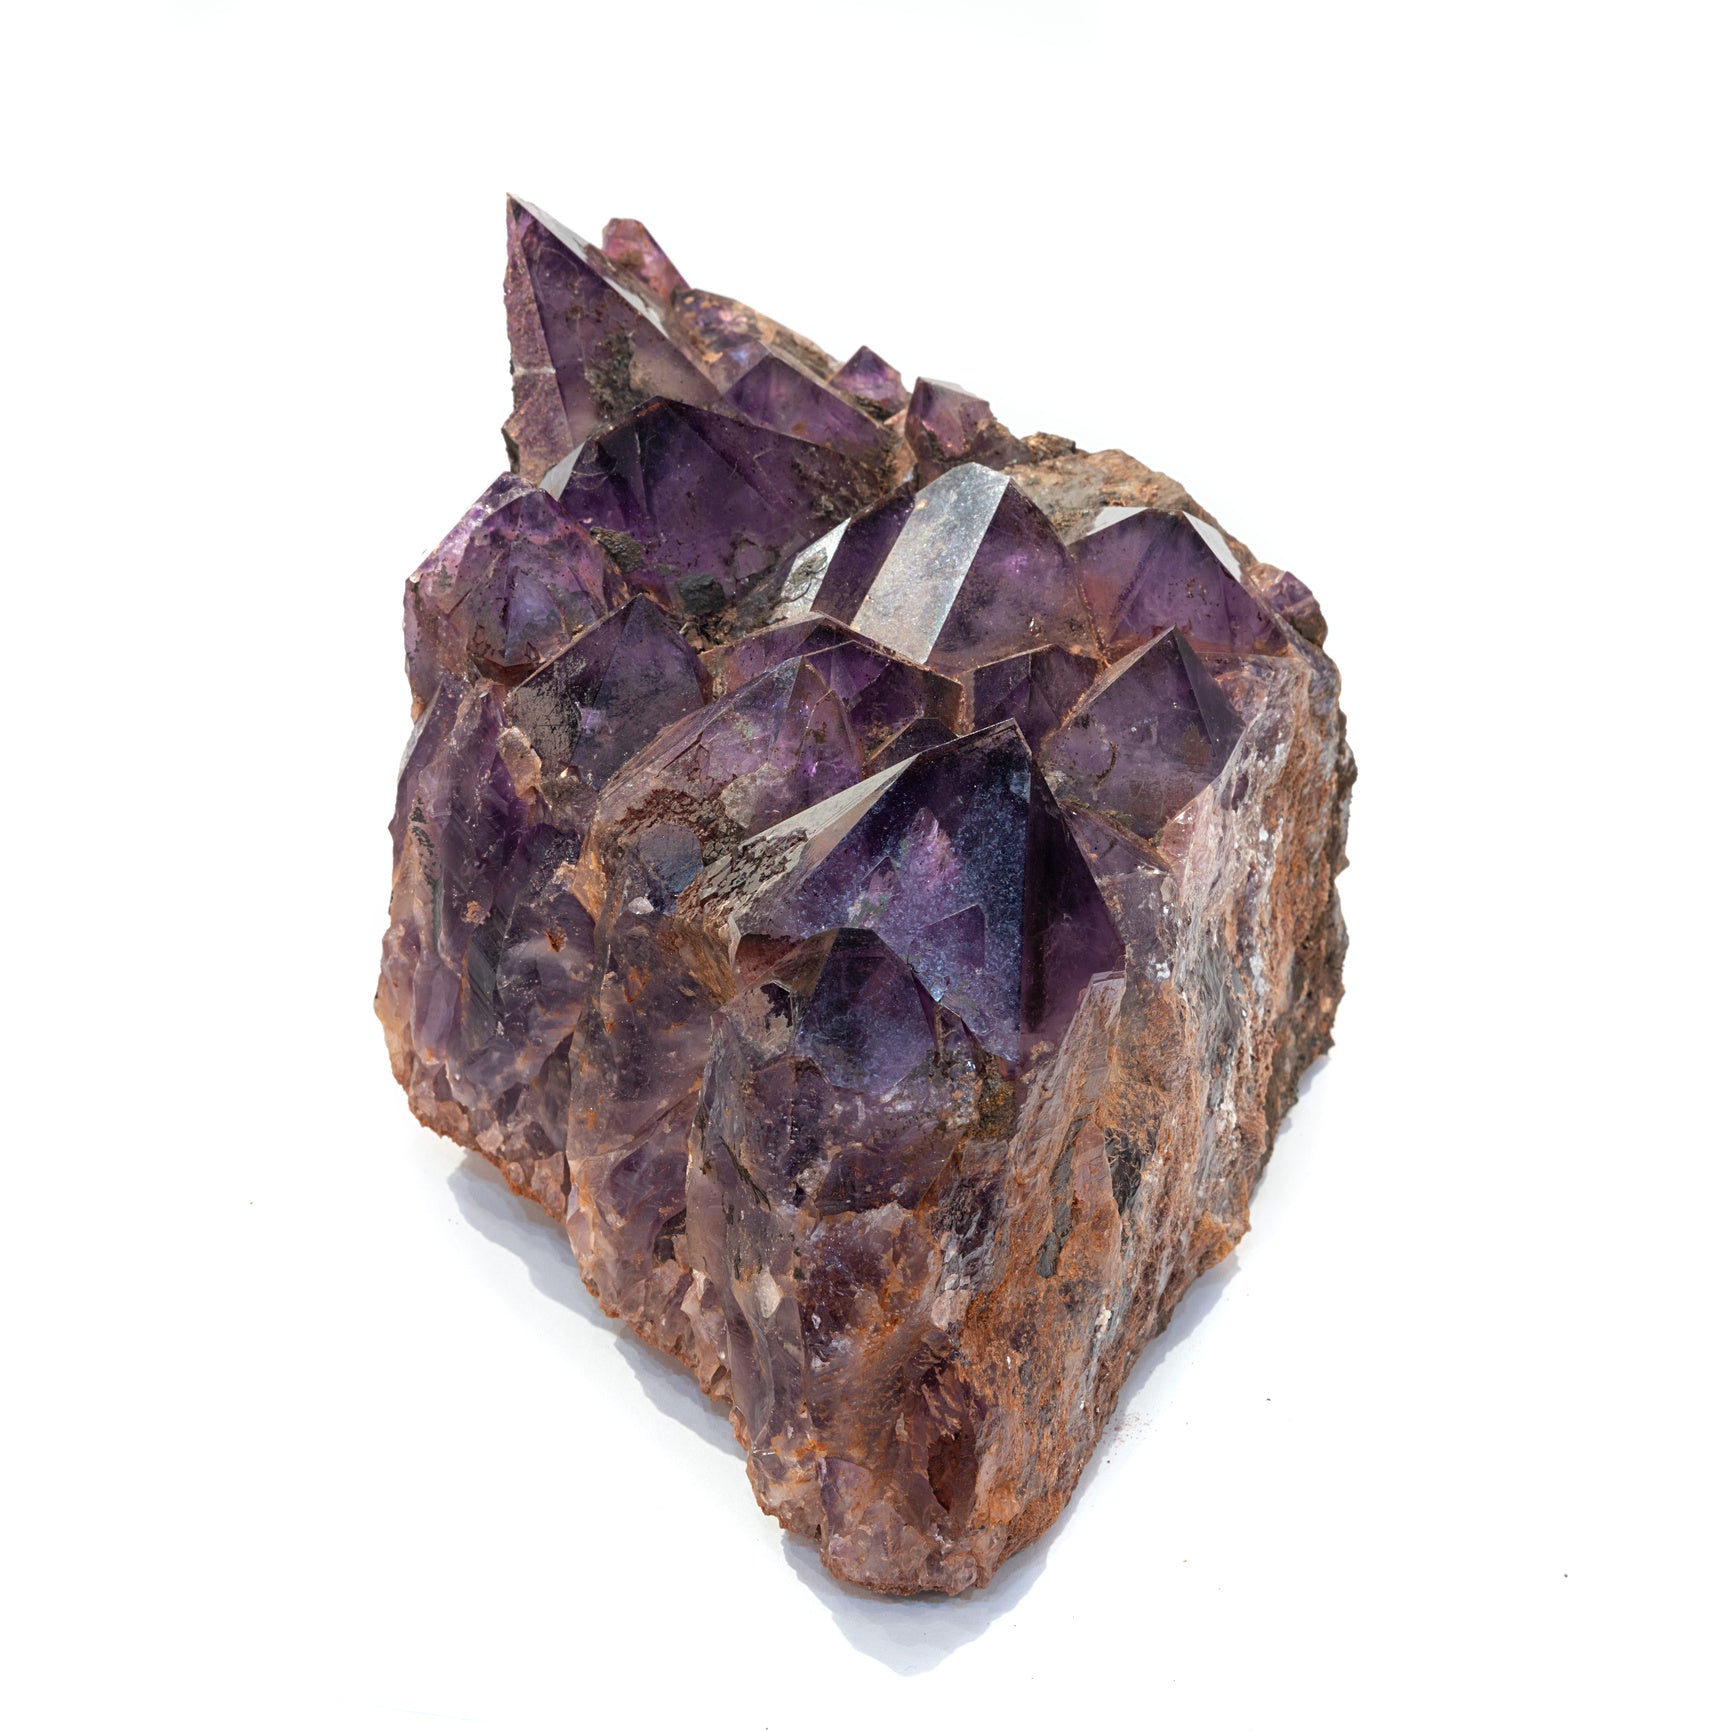 Four Peaks Amethyst Crystal Cluster